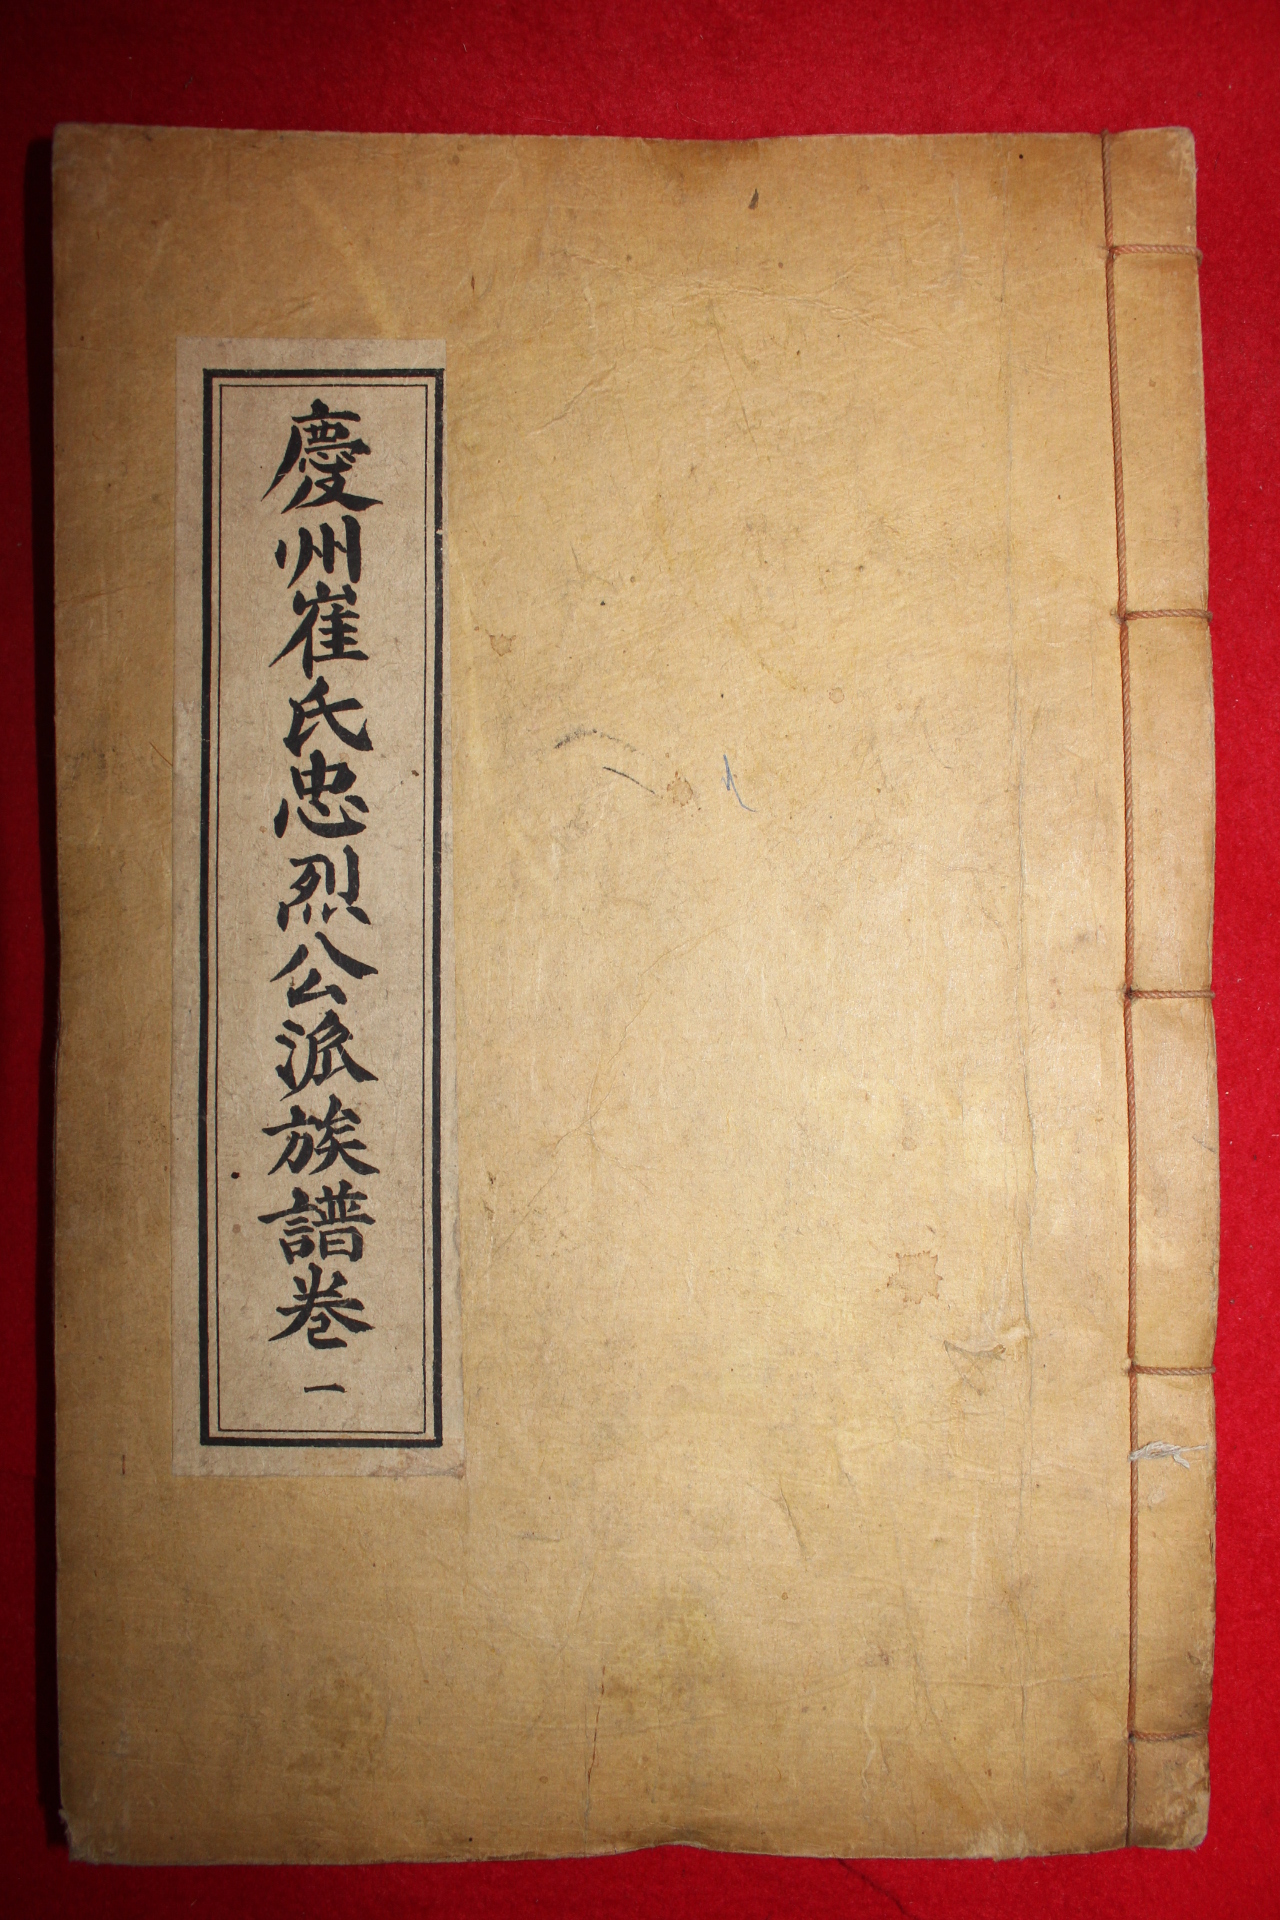 1928년 발문 경주최씨충열공파족보(慶州崔氏忠烈公派族譜) 8책